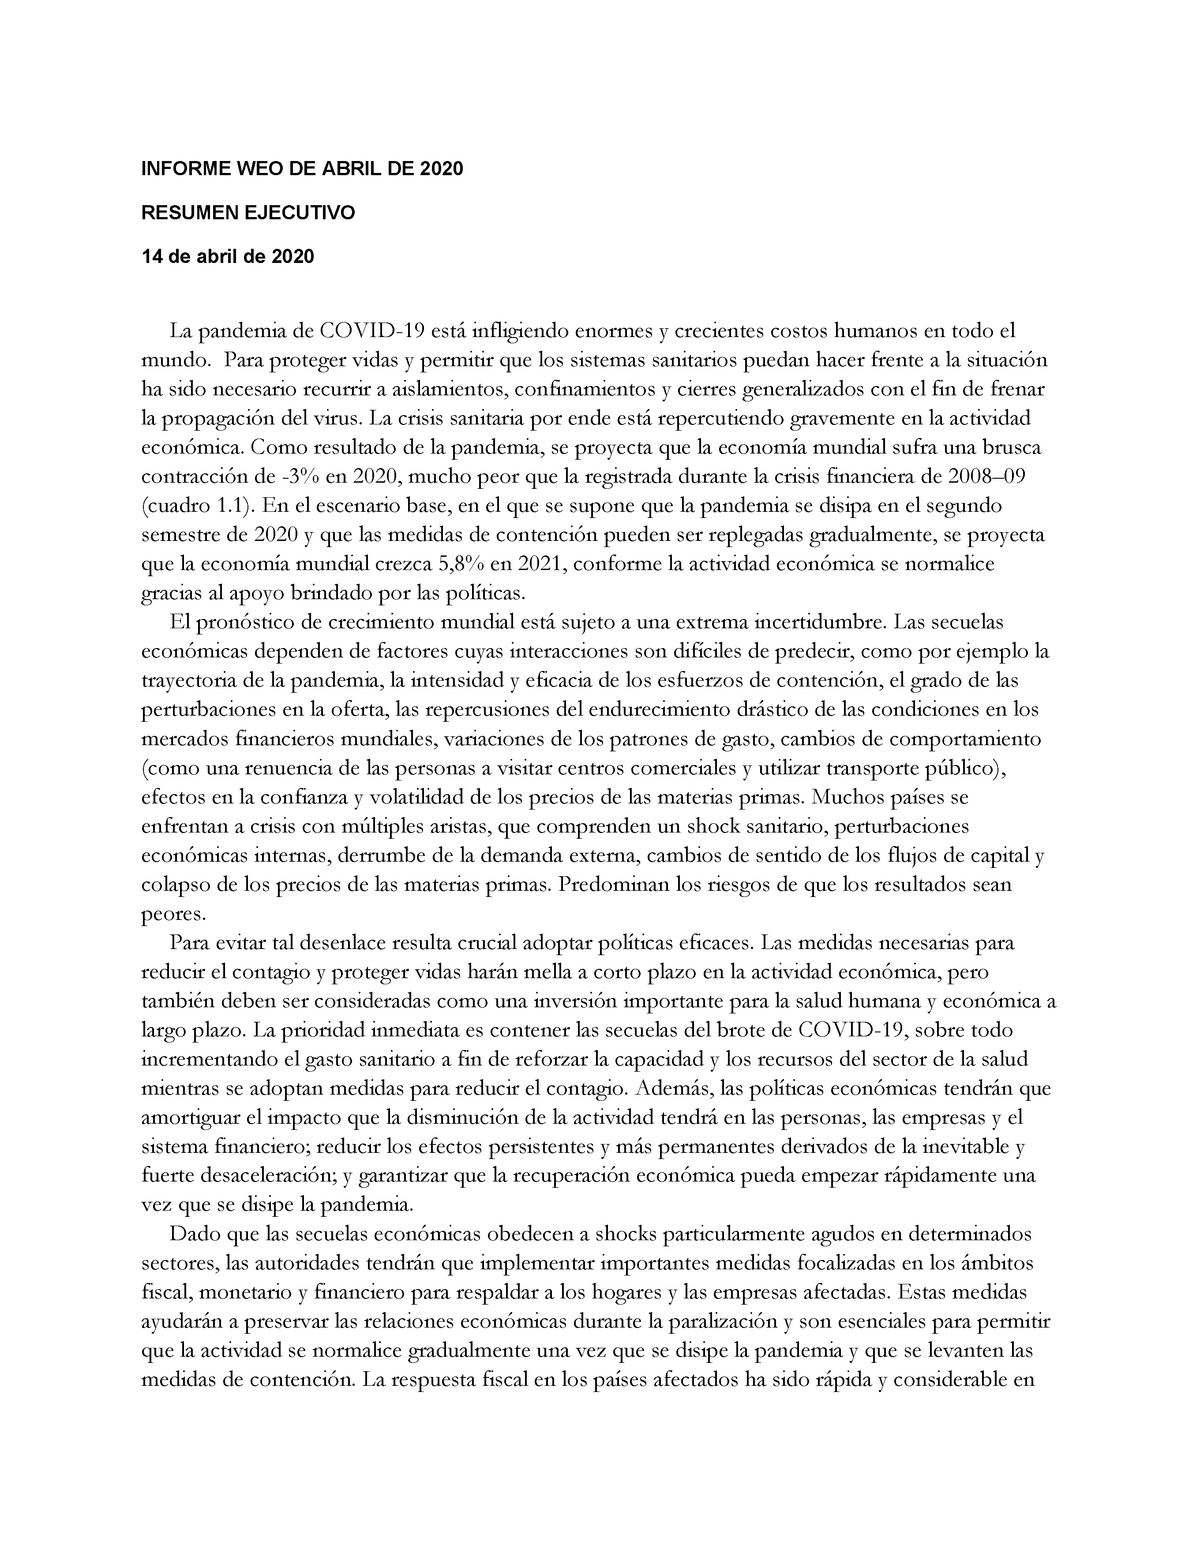 Execsums - Apuntes 7 - INFORME WEO DE ABRIL DE 2020 RESUMEN EJECUTIVO ...